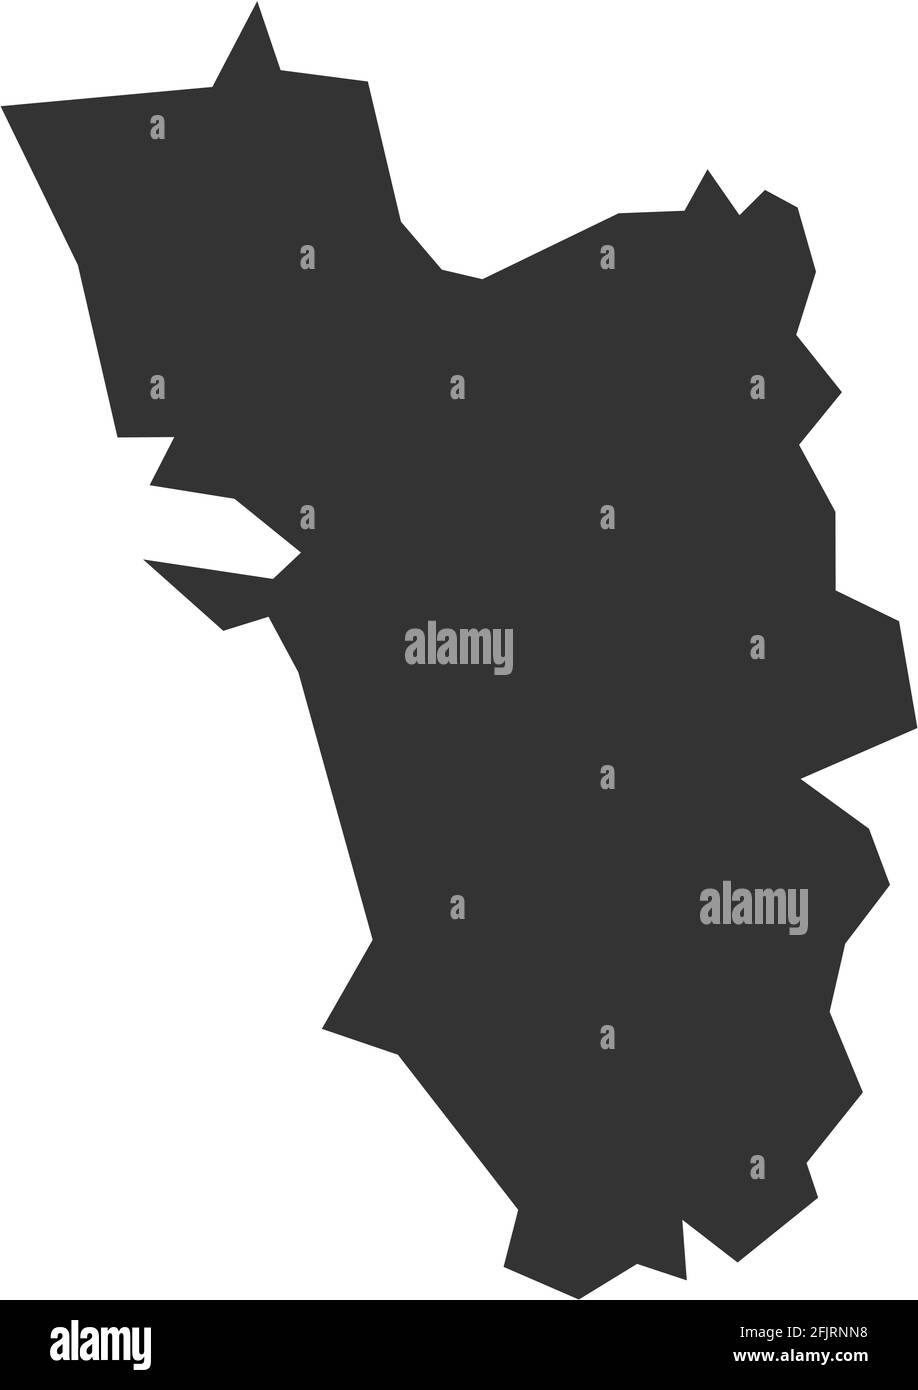 Mappa dello stato indiano di Goa. Sfondo grigio scuro. Progettazione grafica dei concetti aziendali. Illustrazione Vettoriale